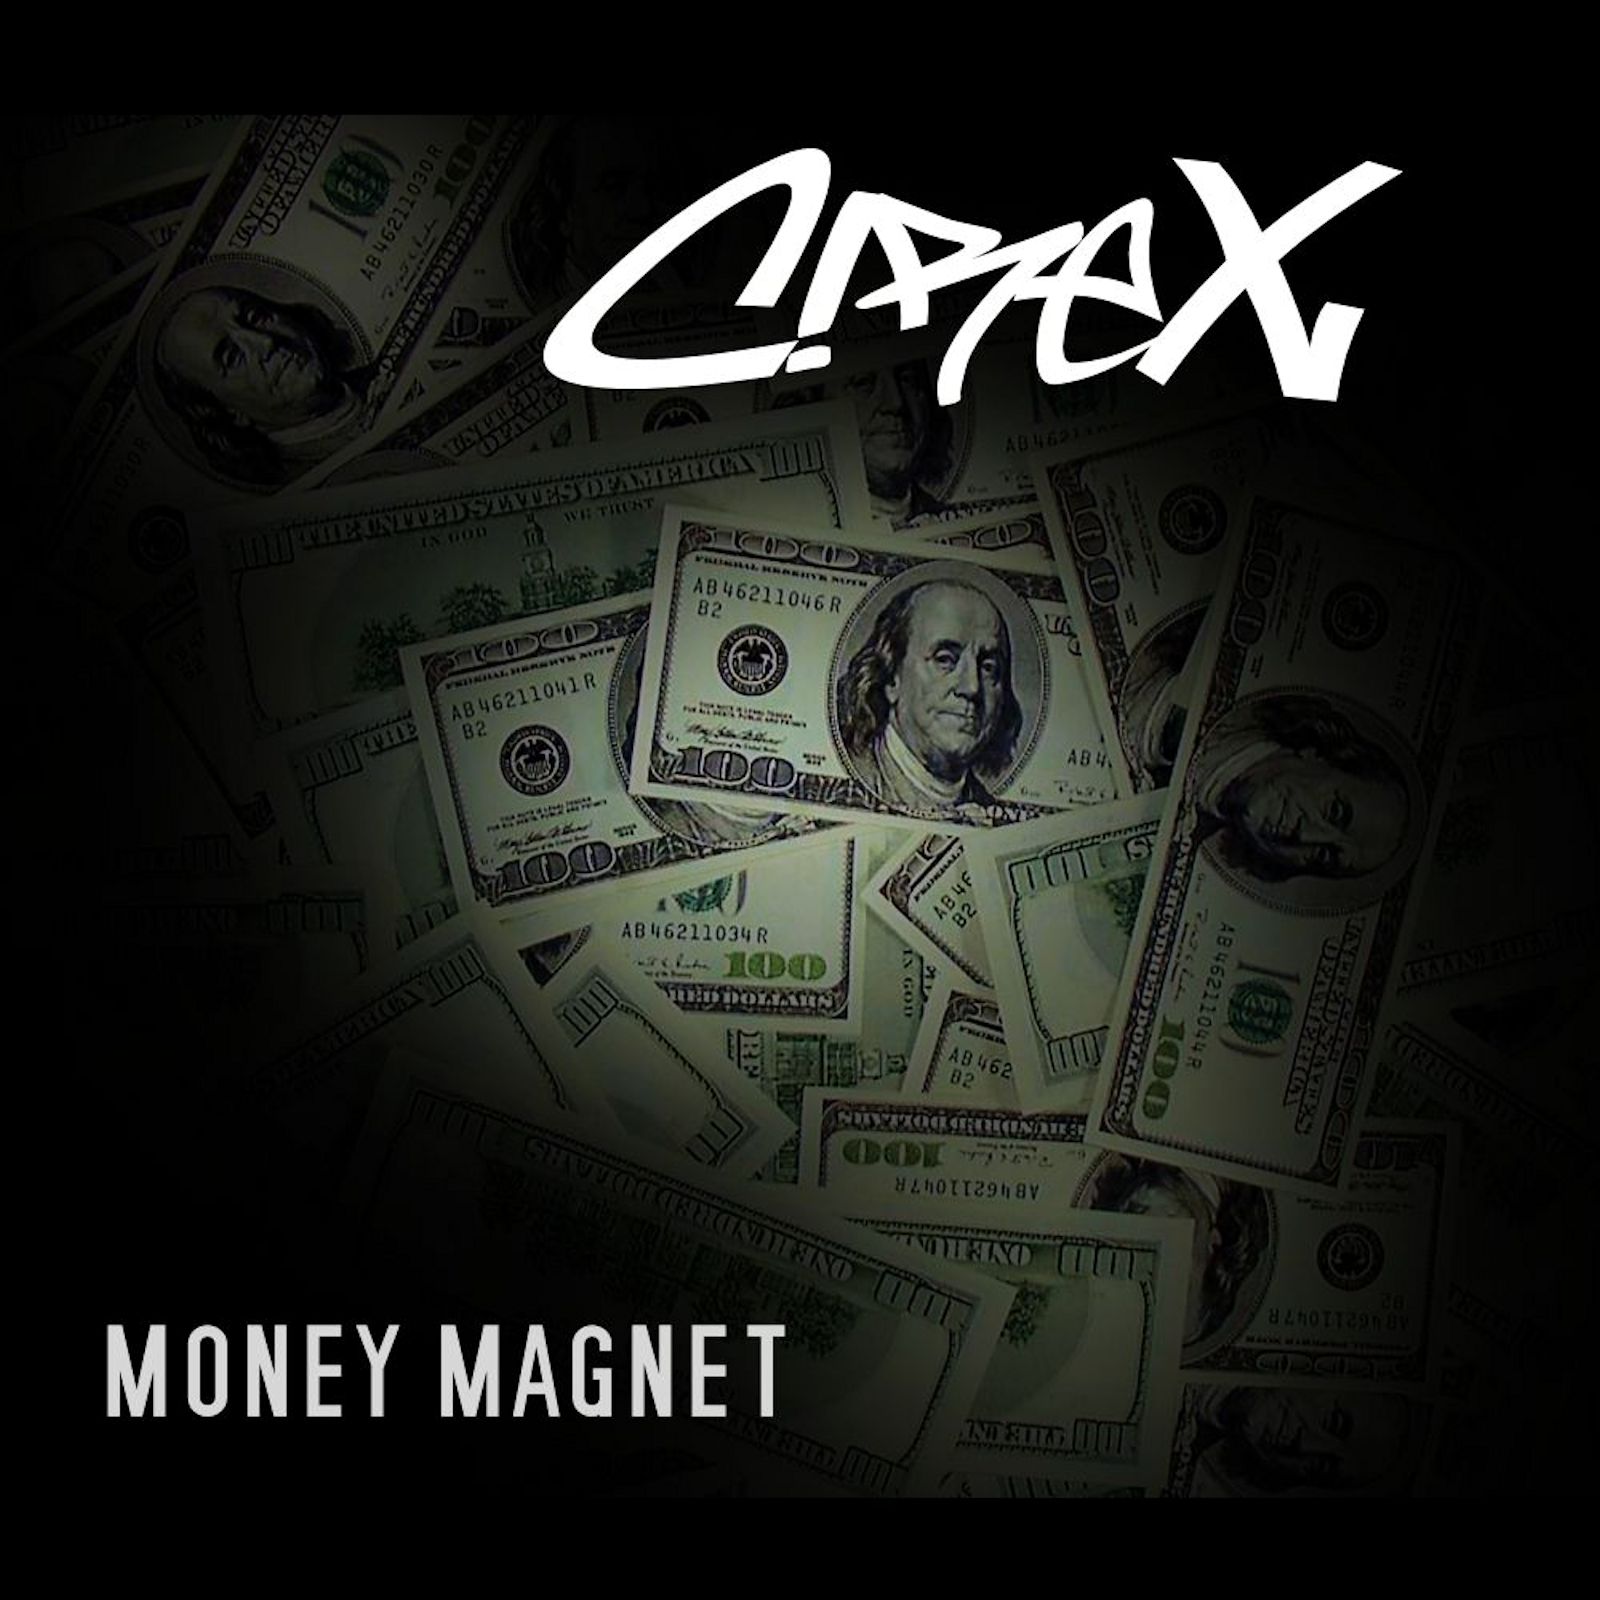  Cirex – “Money Magnet”